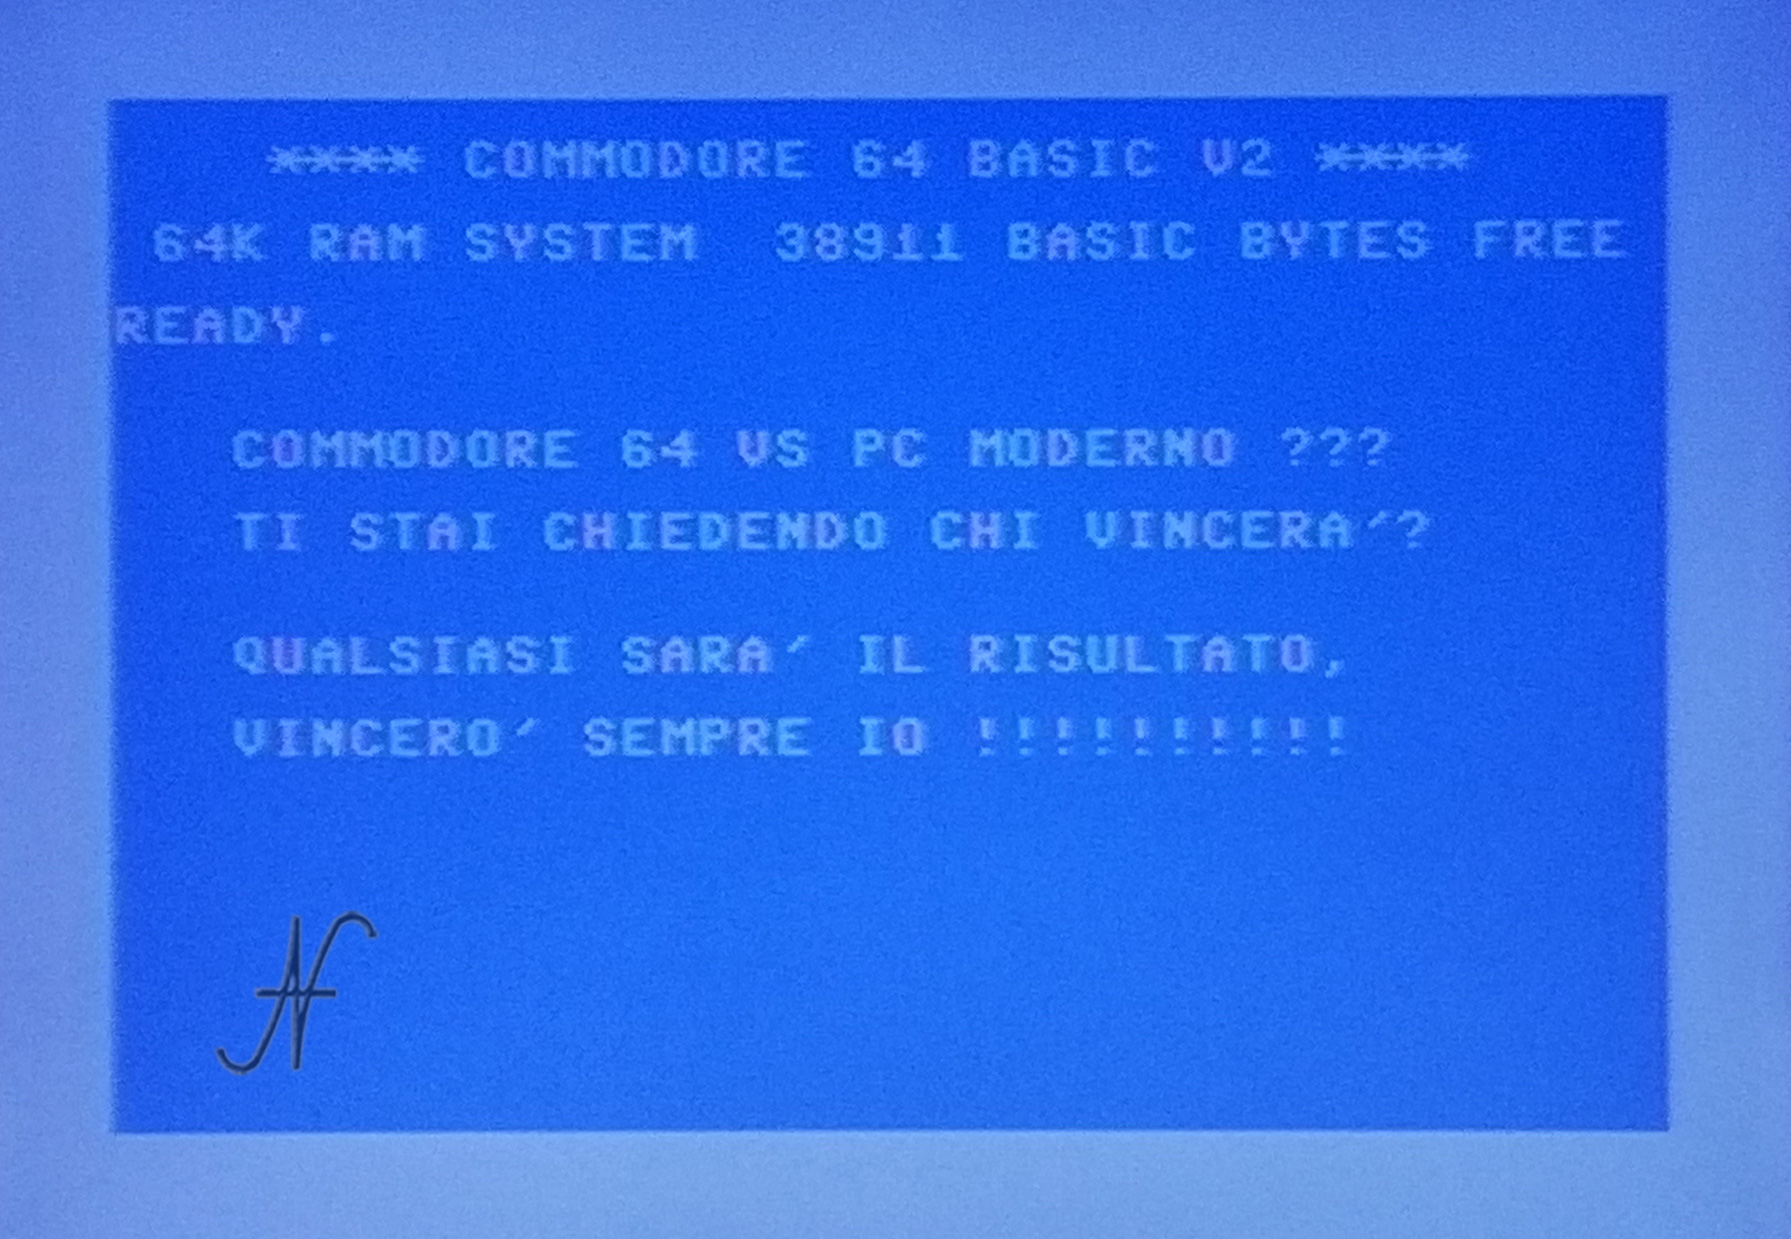 Confronto Commodore 64 con PC moderno, chi vince?